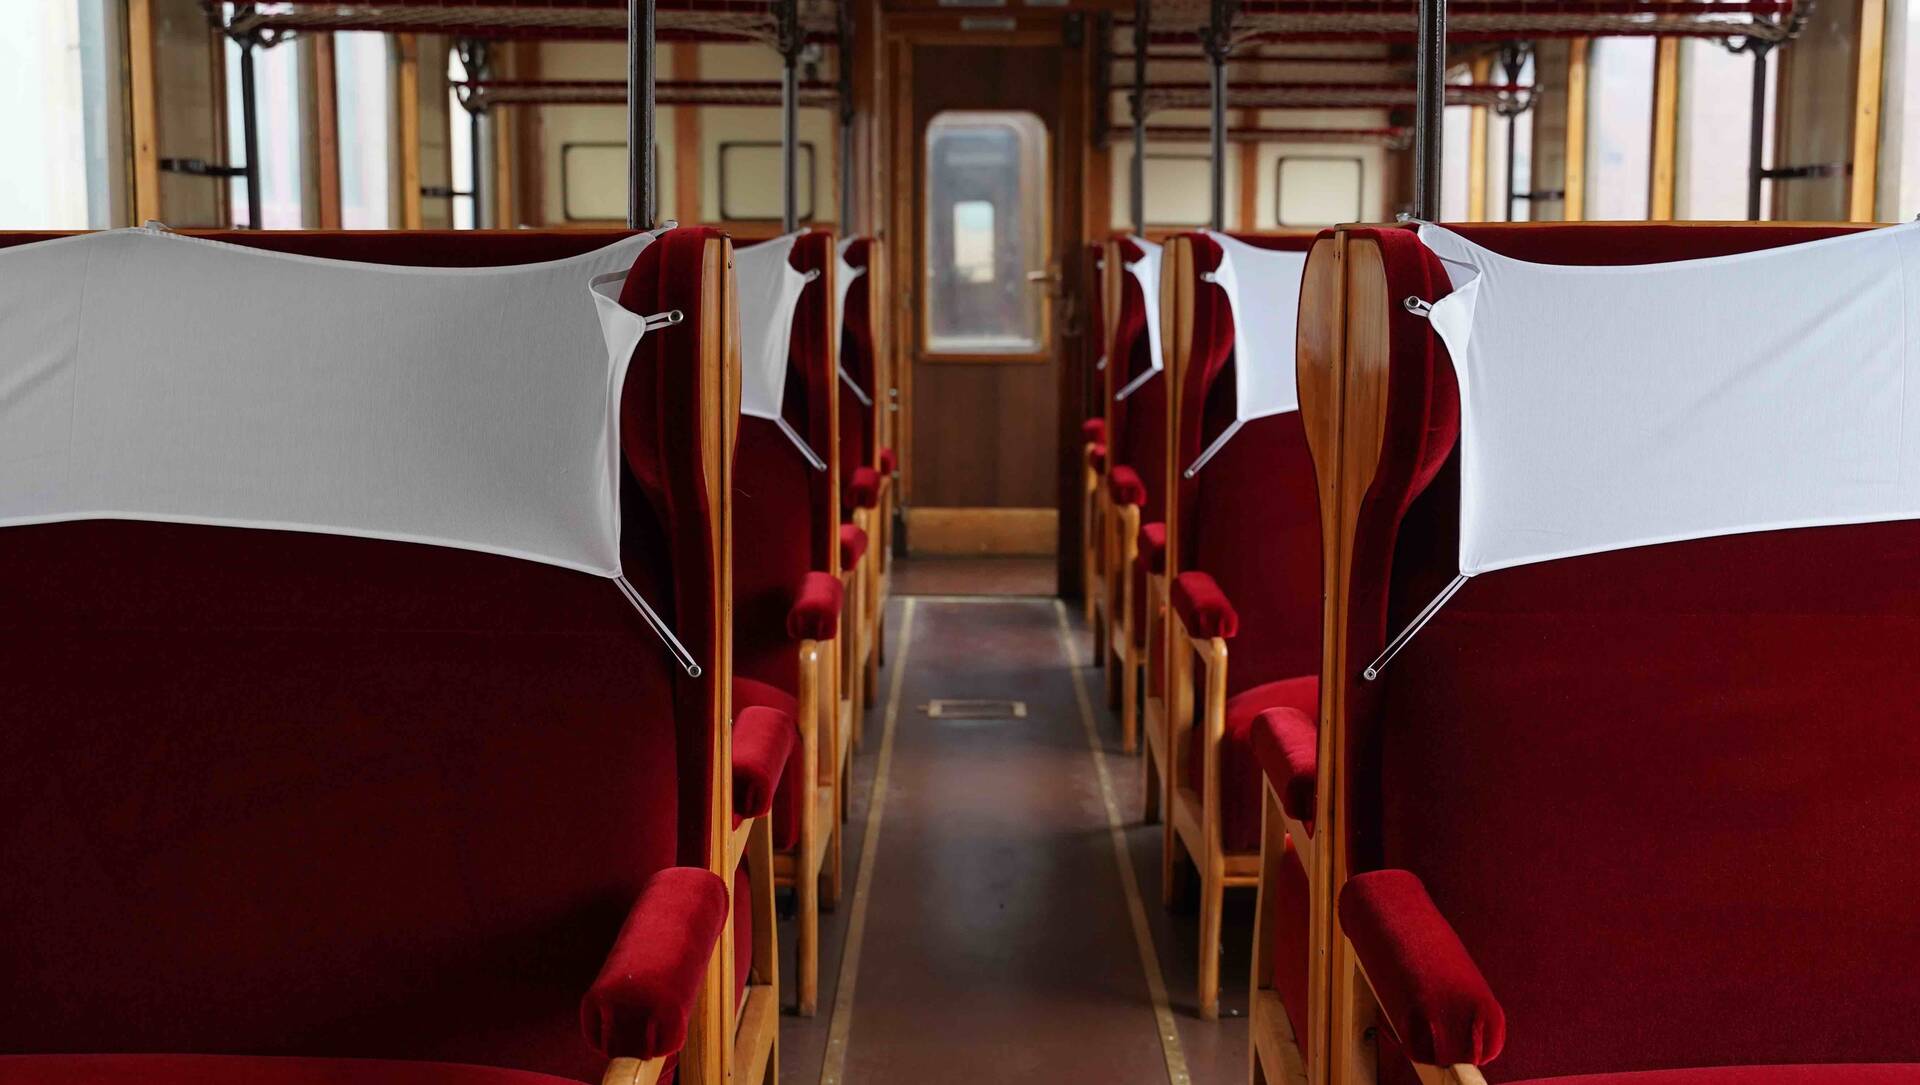 Trenord, torna il treno anni ’50 sui binari: tutte le info per viaggiare